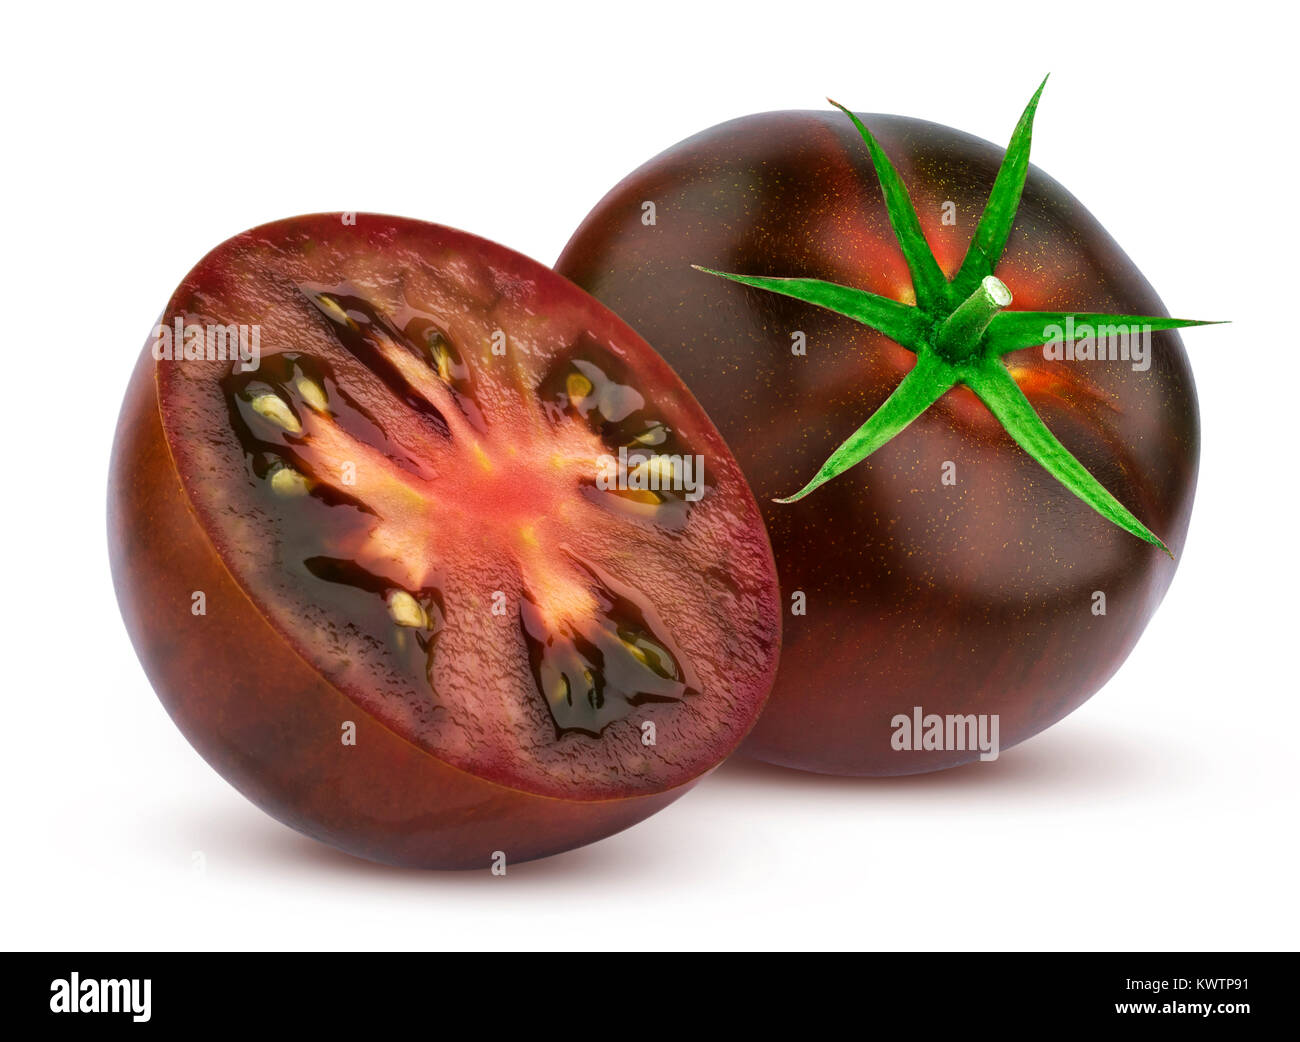 Black tomatoes isolated on white background Stock Photo